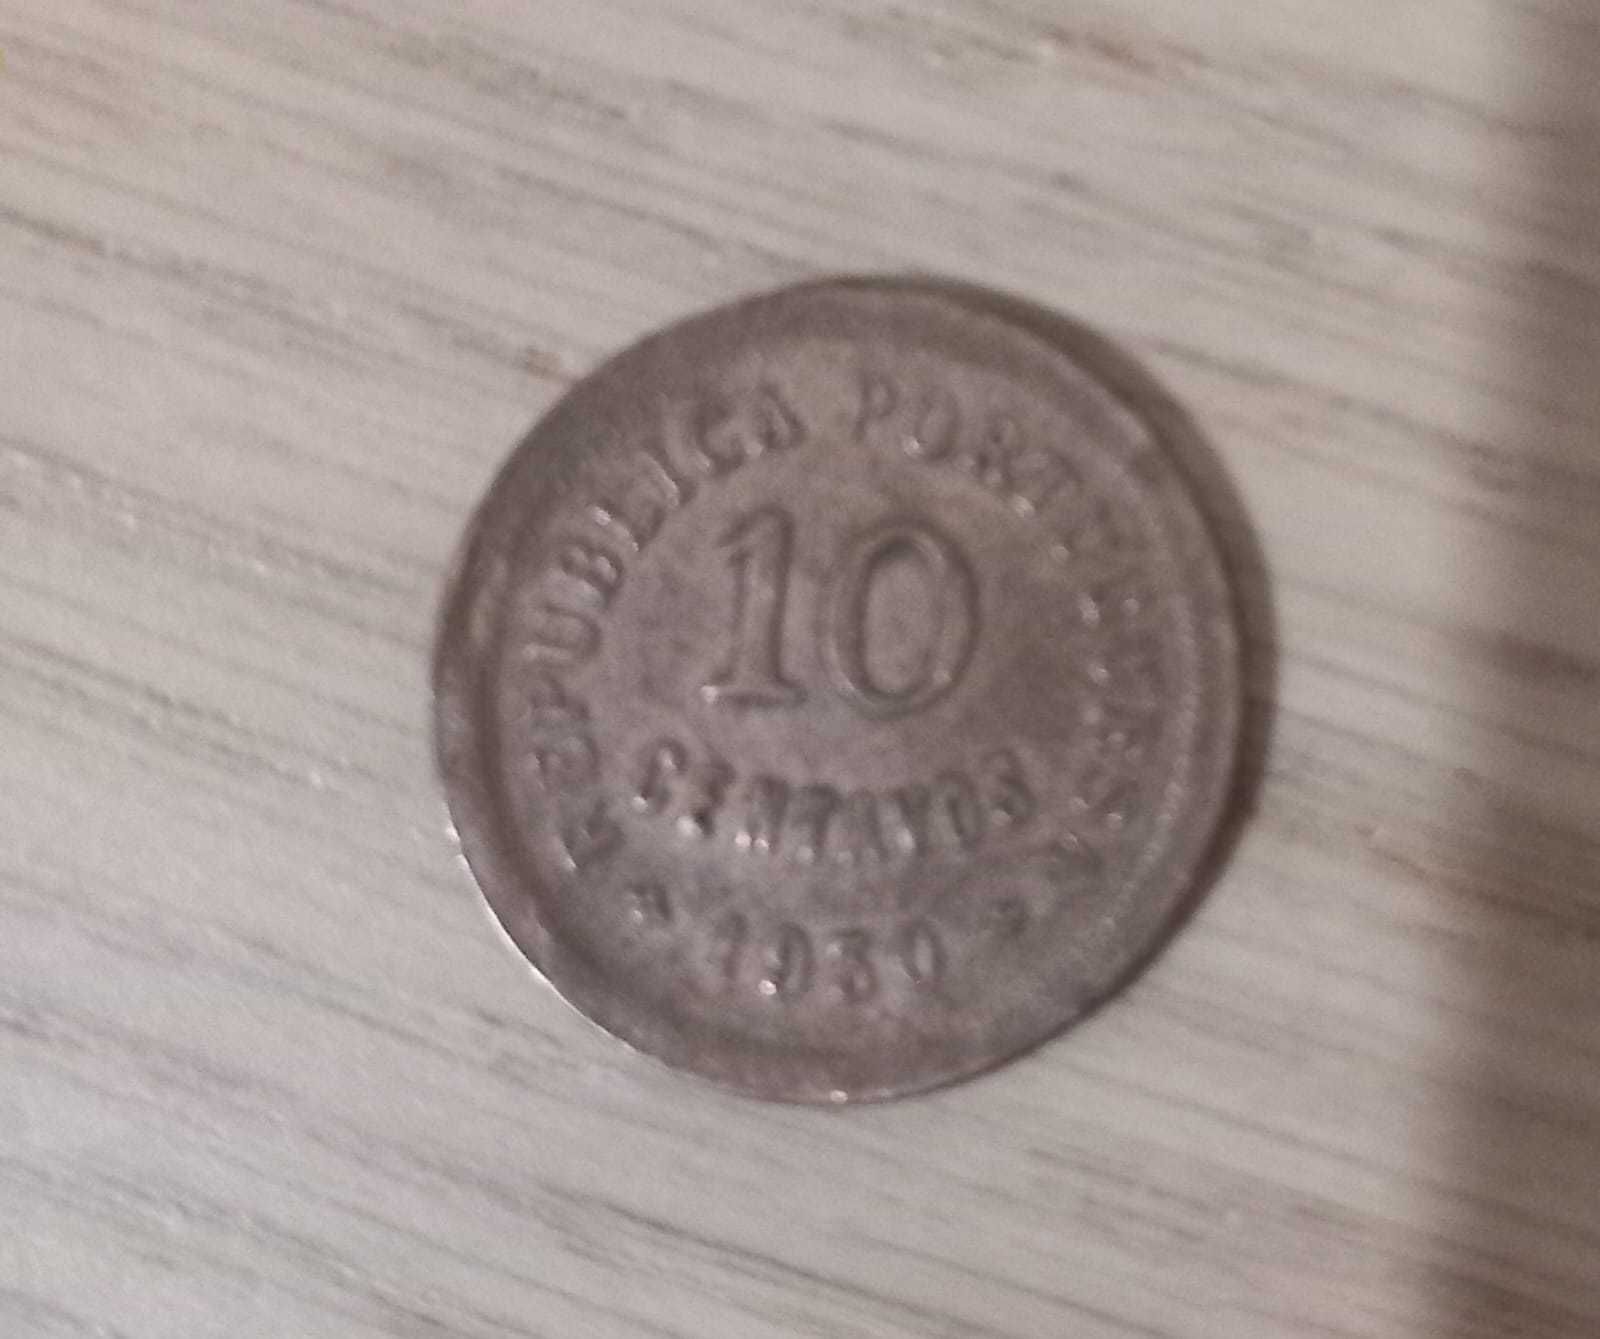 Moedas Antigas - 10 centavos de 1930 e 1938.